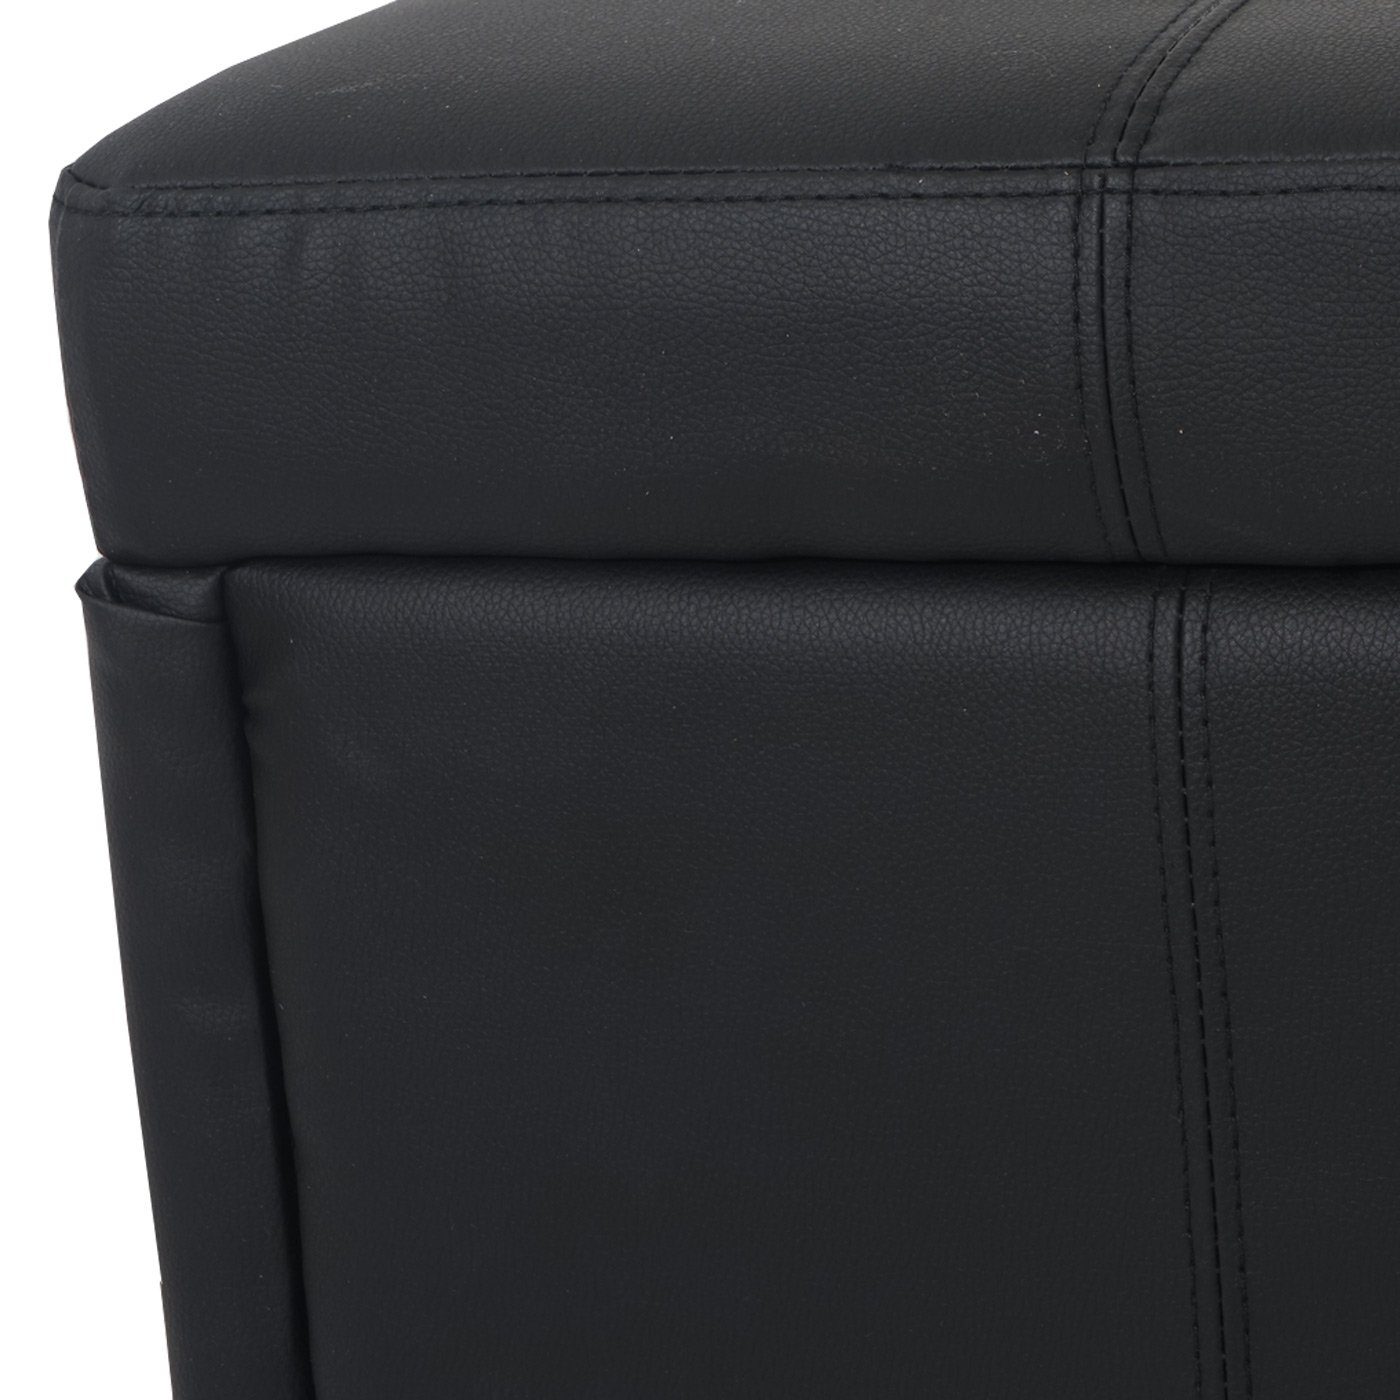 Aufbewahrungsfach Gepolsterte Truhe schwarz-matt aufklappbaren Deckel, Mit MCW Sitzfläche, Kriens,